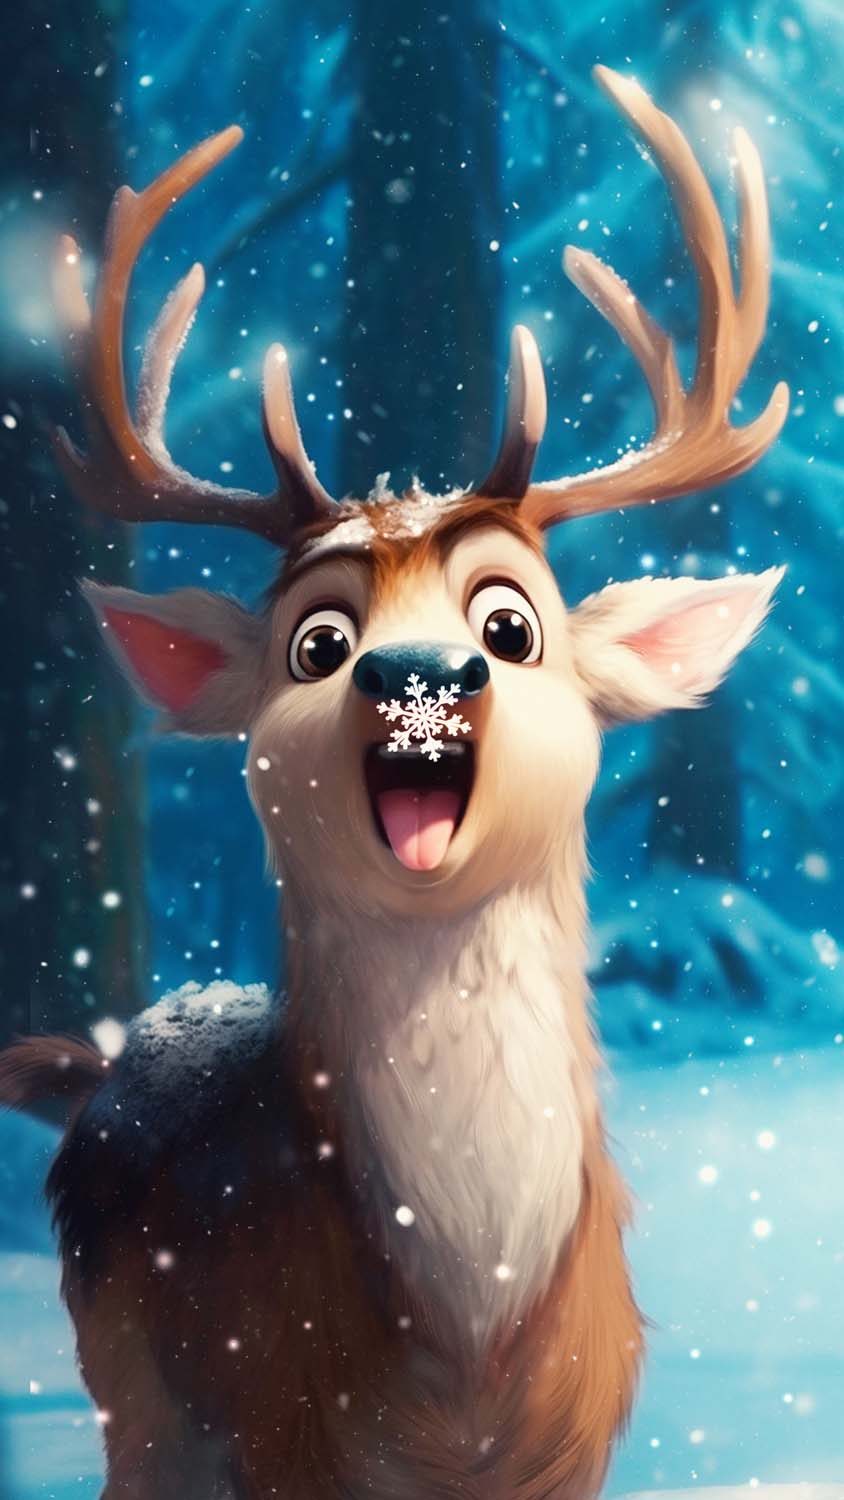 Snow Deer iPhone Wallpaper